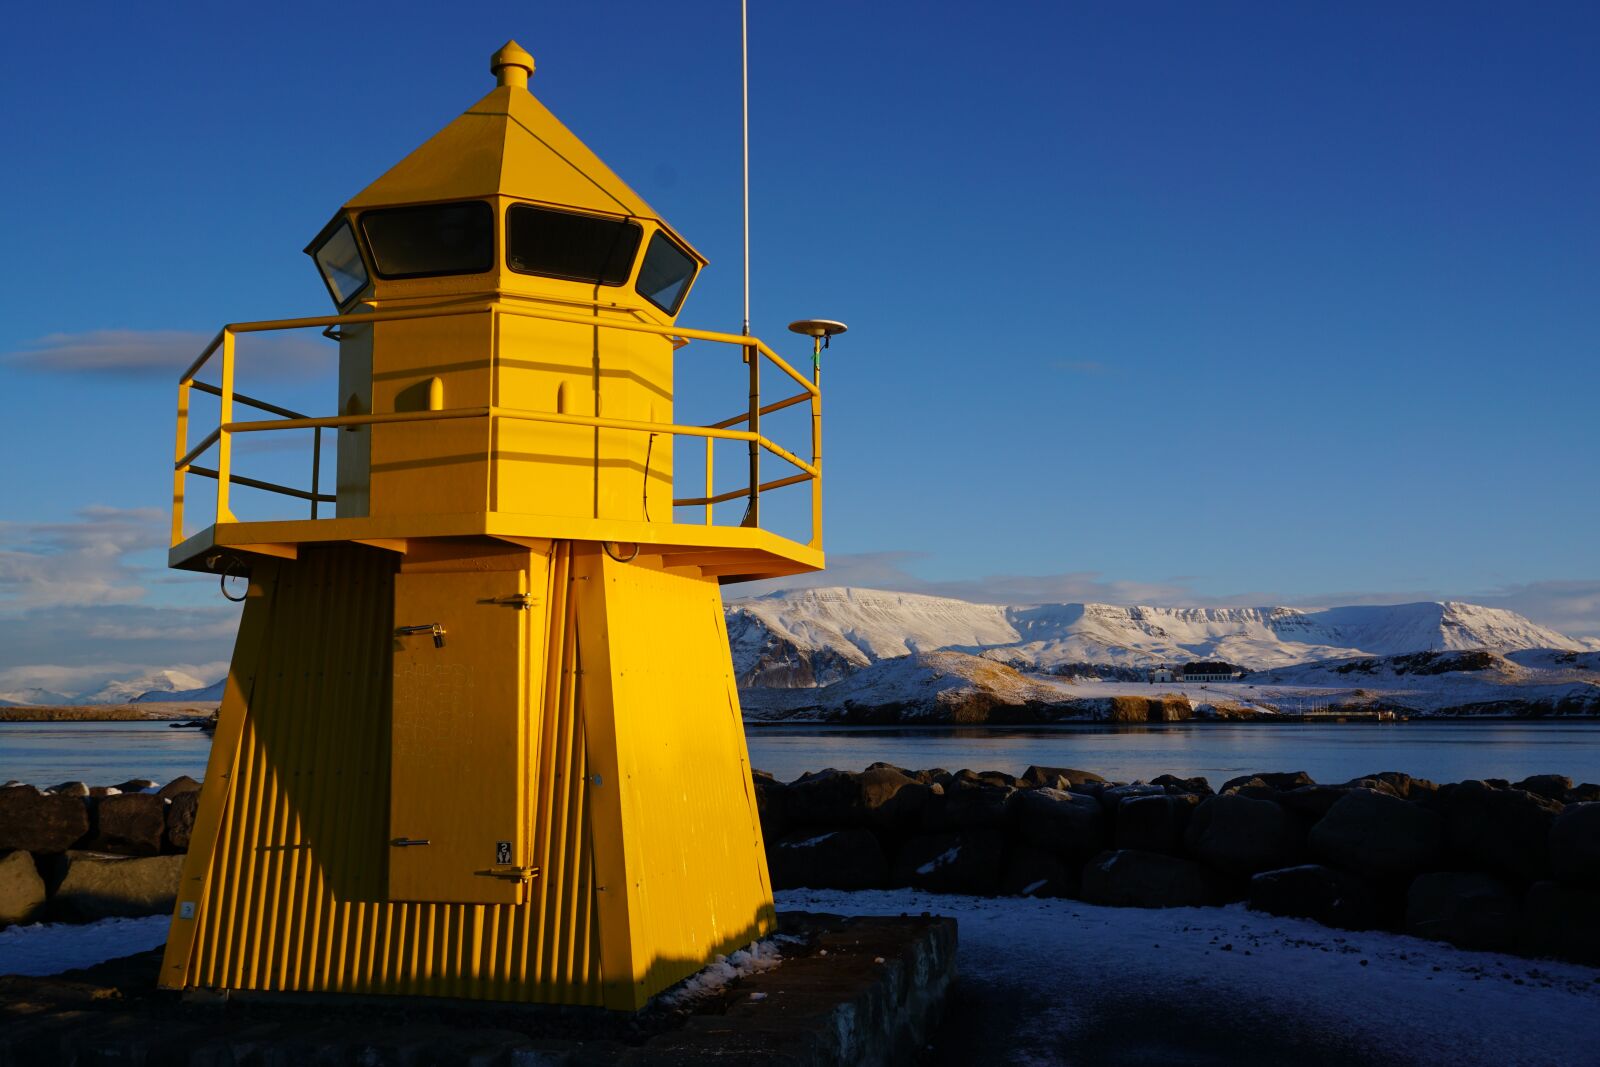 Sony a6000 sample photo. Light house, reykjavik, iceland photography